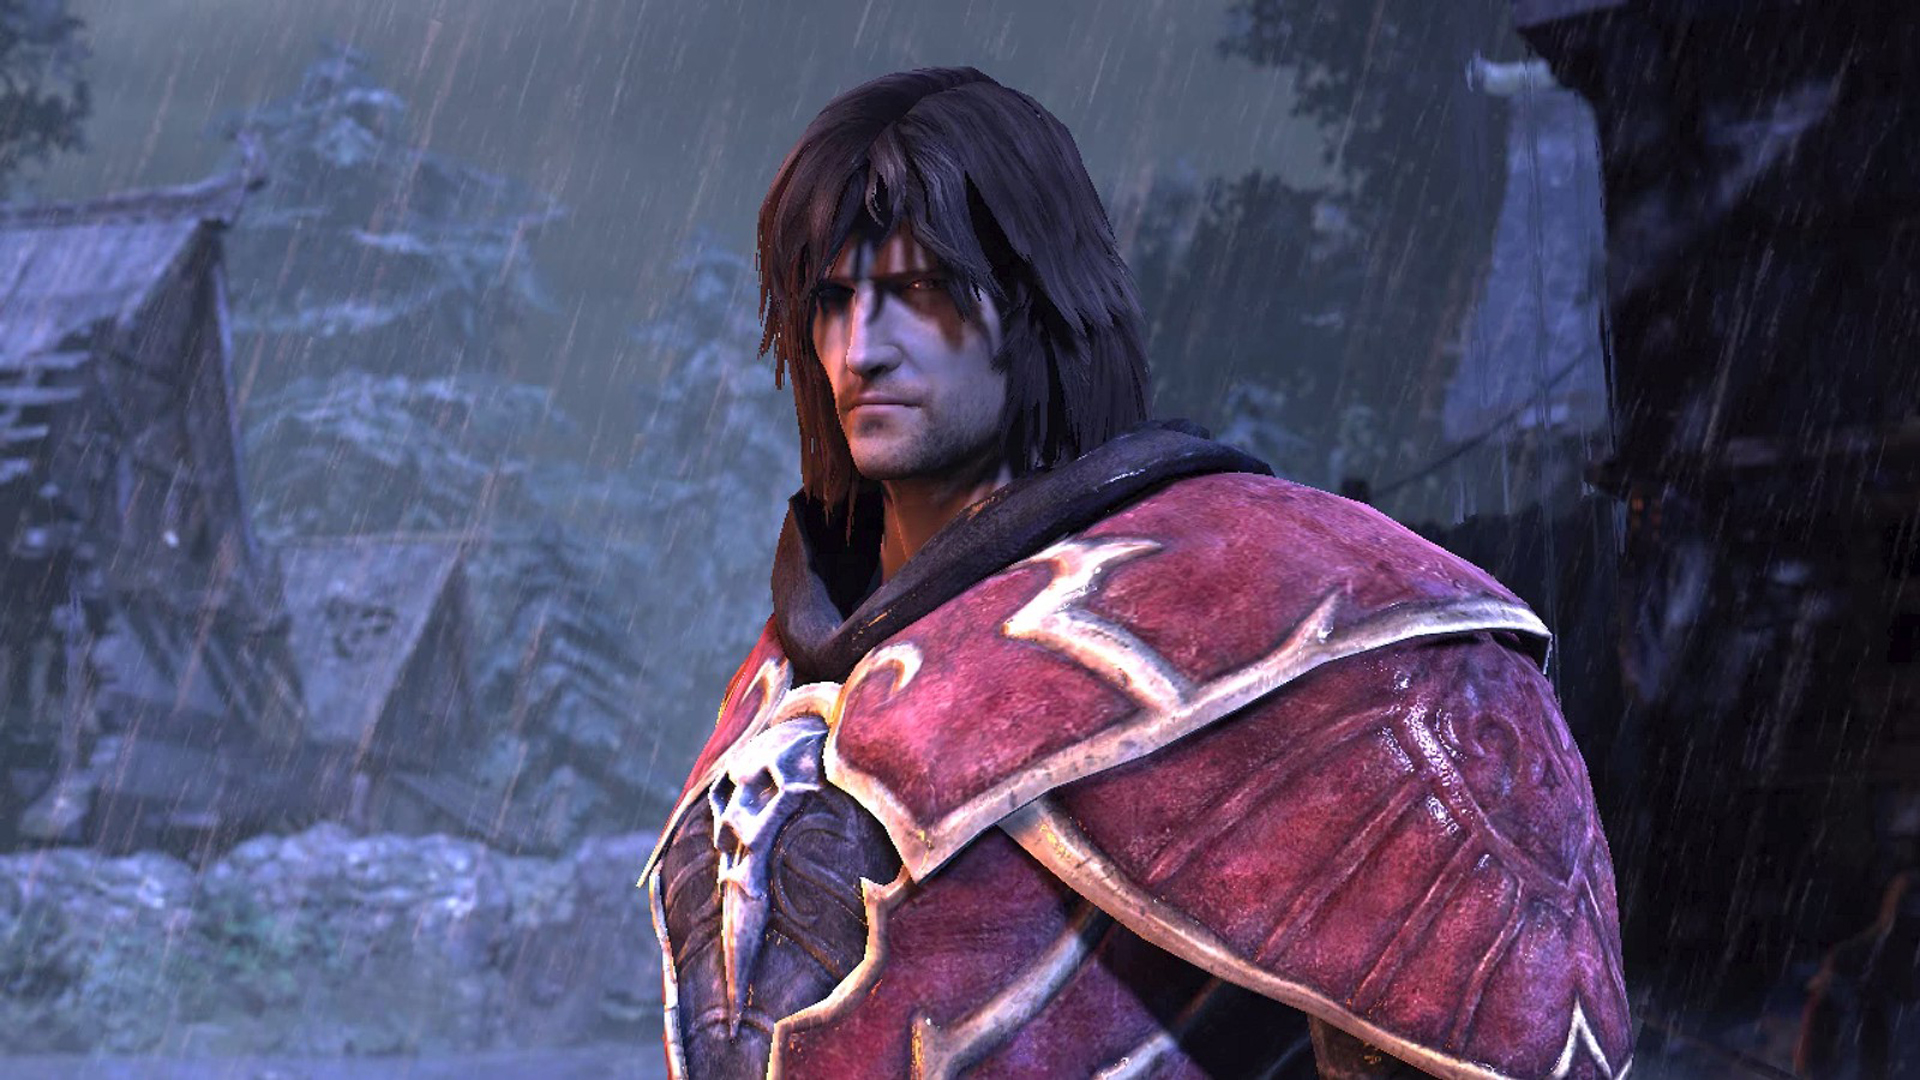 גבר עם שיער ארוך ושריון אדום אקסטרווגנטי עומד בעצב בגשם באחד ממשחקי הערפדים הטובים ביותר, Castlevania Lords of Shadow